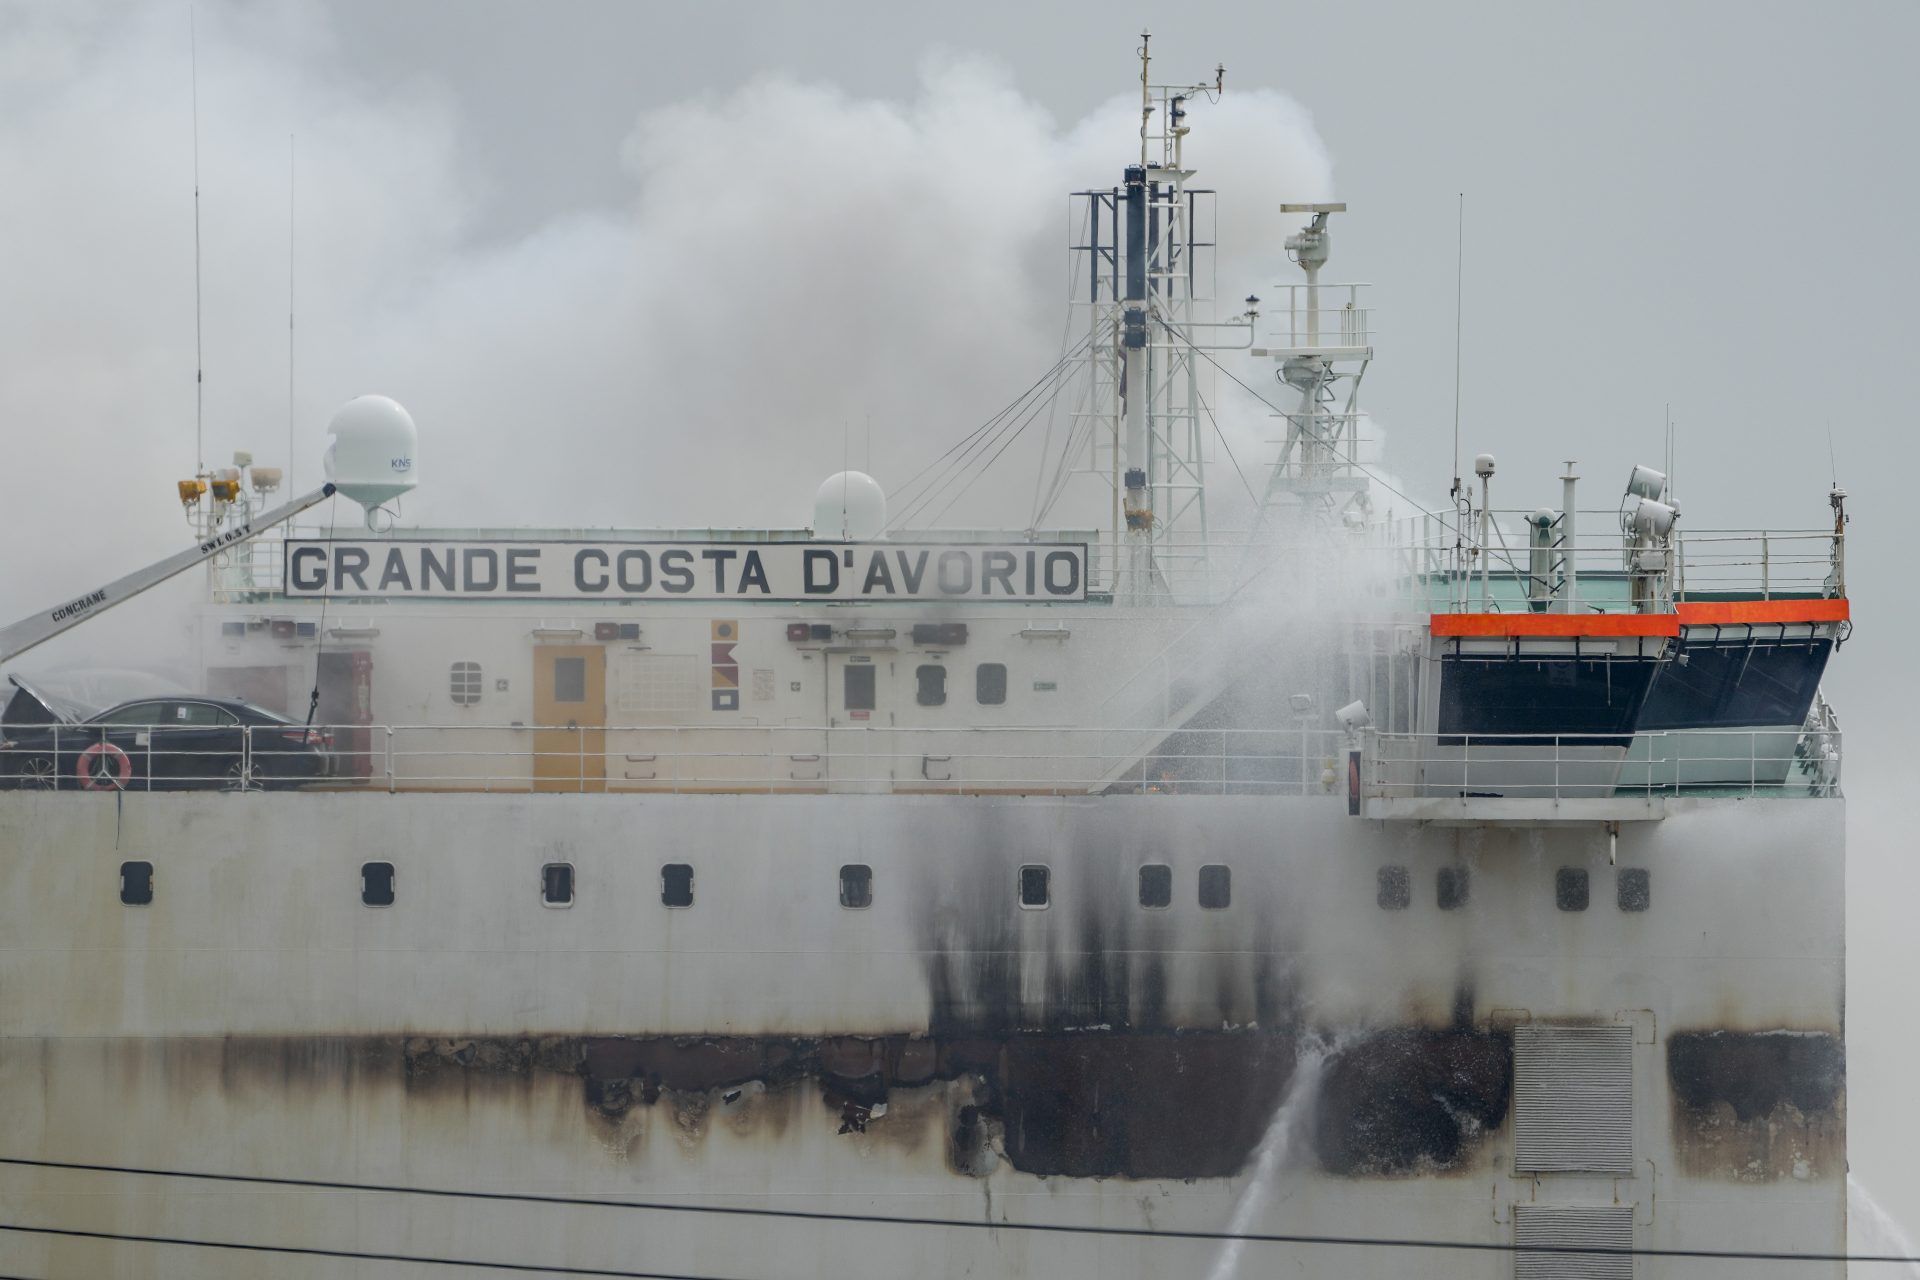 Equipes de emergência trabalham para conter incêndio no cargueiro Grande Costa d'Avorio, no porto de Newark, em Nova Jérsei, nos Estados Unidos - Foto: John Minchillo/Associated Press/Estadão